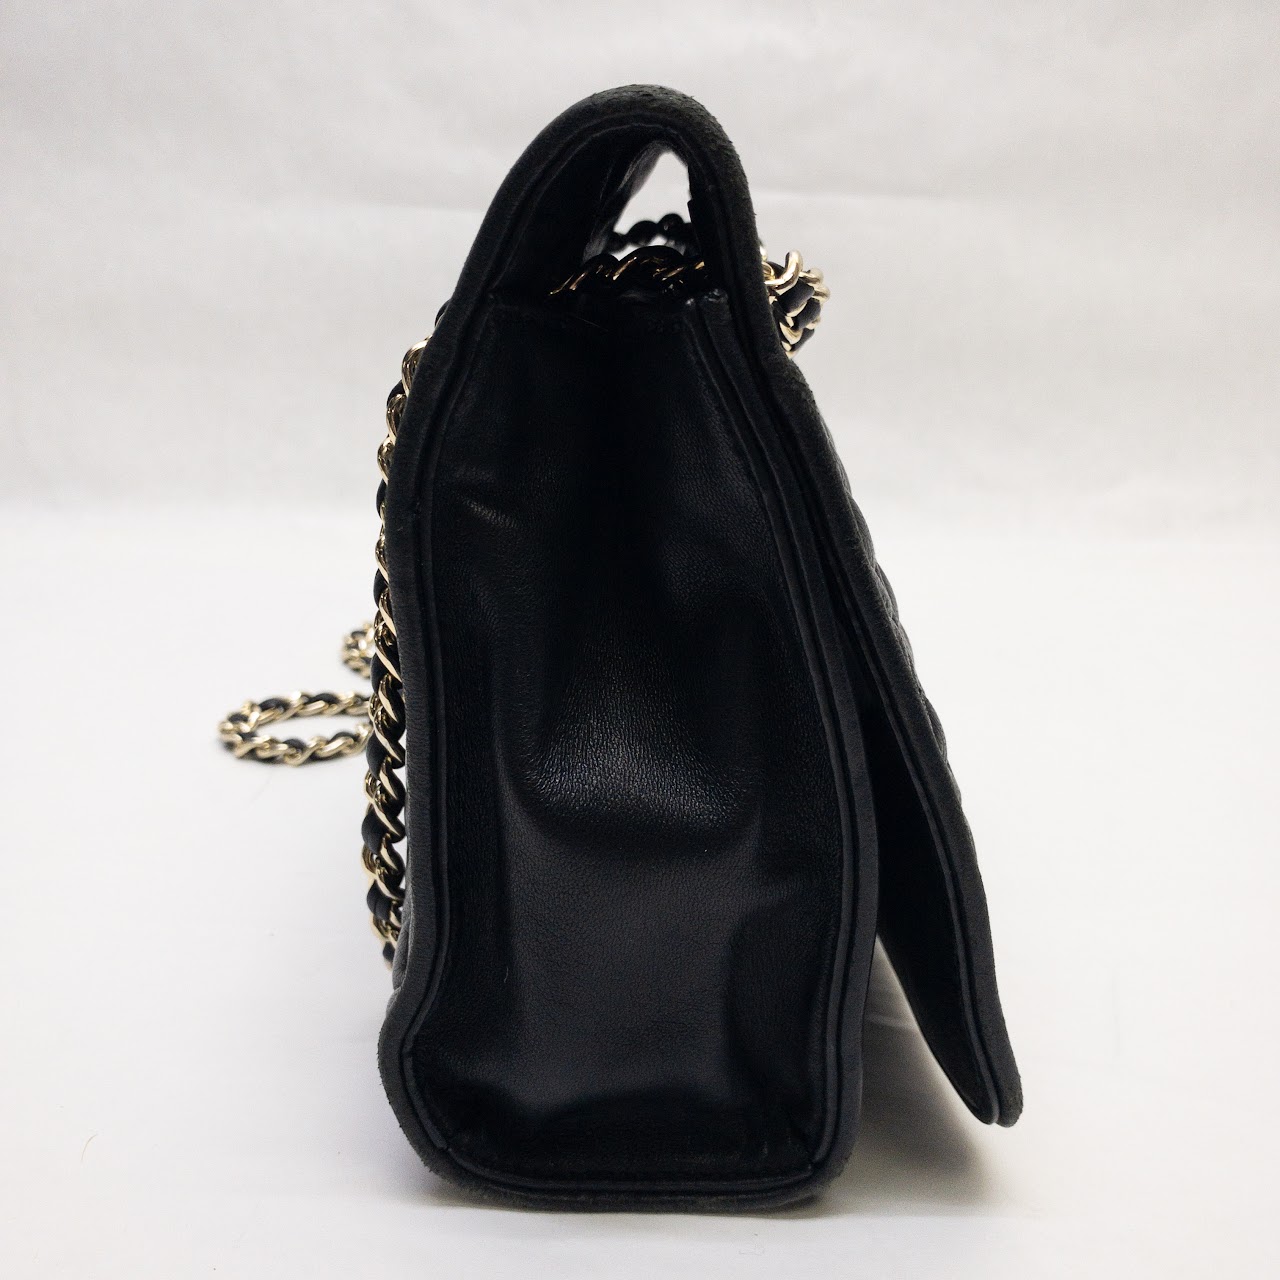 Tory Burch Black Leather Shoulder Bag